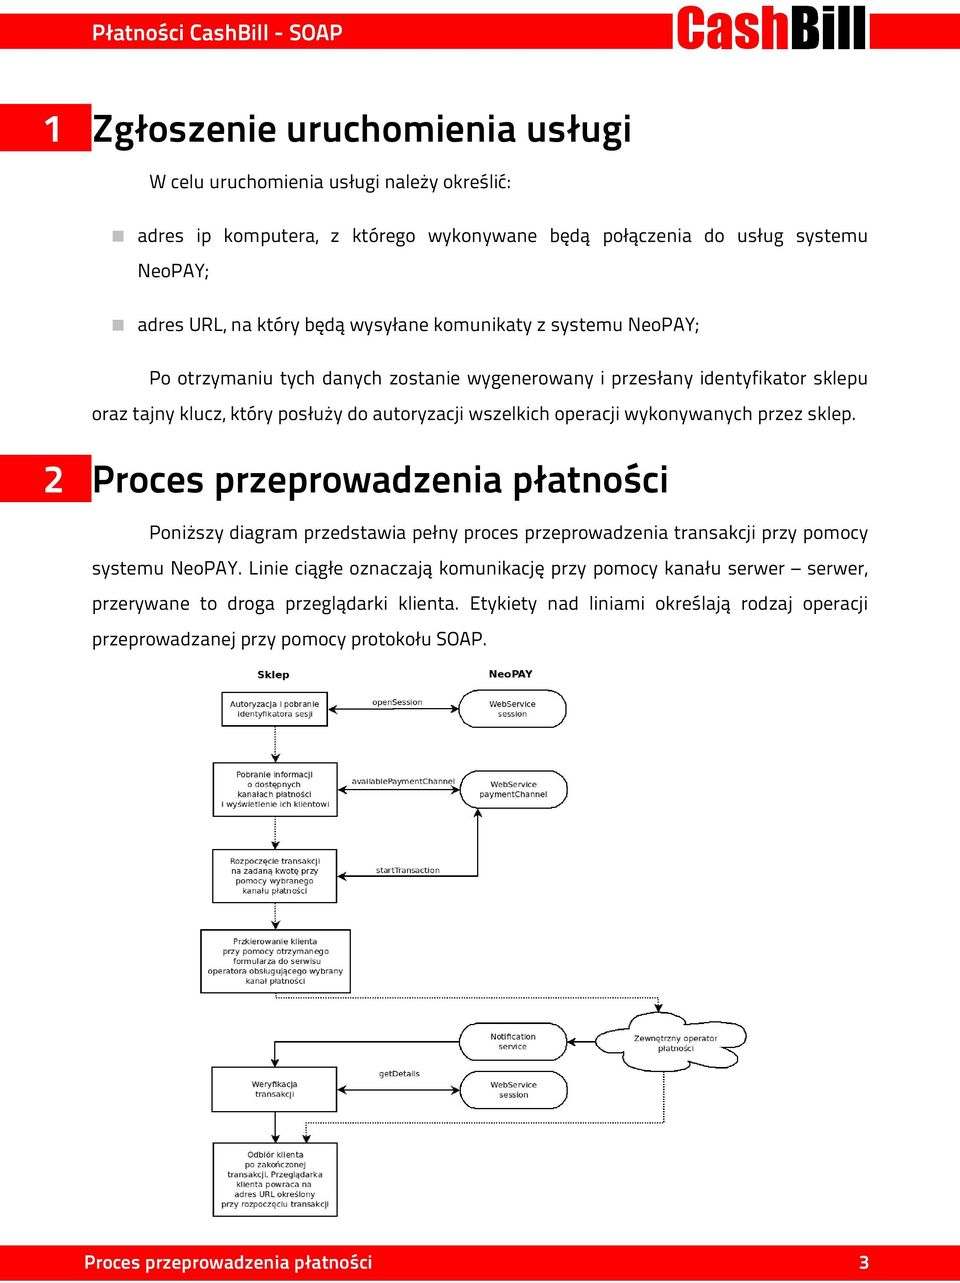 wykonywanych przez sklep. 2 Proces przeprowadzenia płatności Poniższy diagram przedstawia pełny proces przeprowadzenia transakcji przy pomocy systemu NeoPAY.